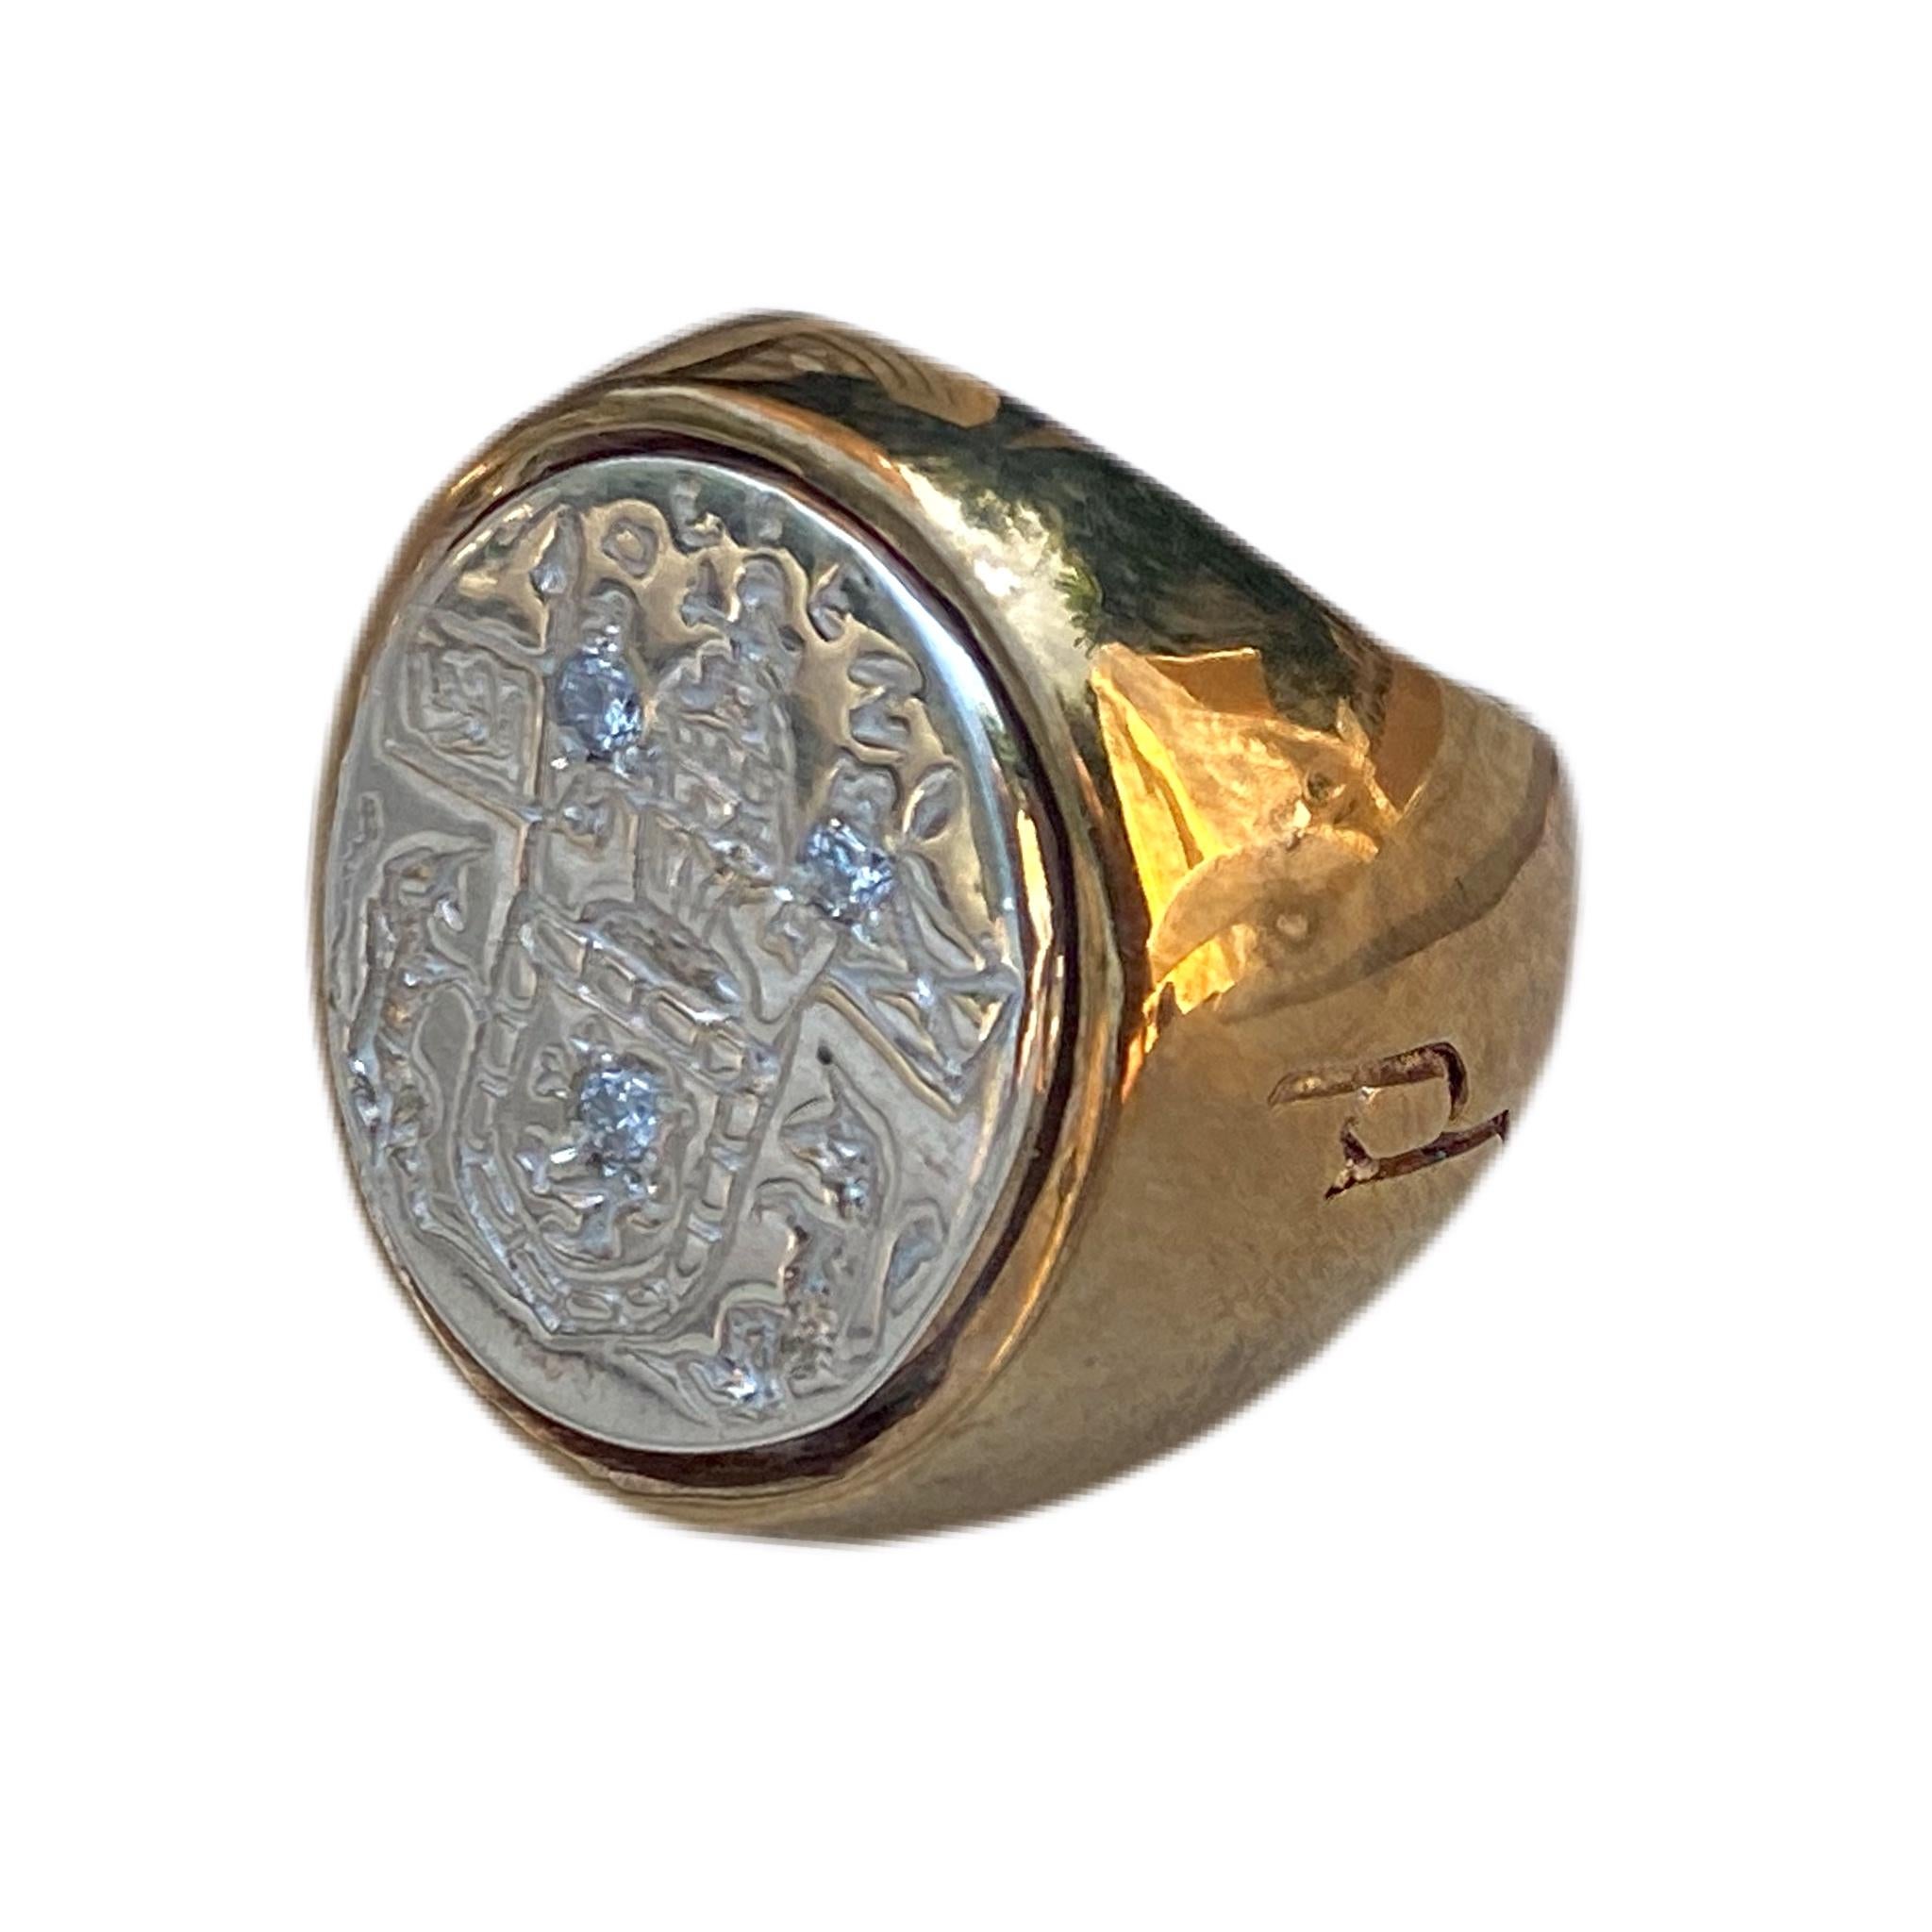 3 pcs White Diamond Crest Signet Ring Sterling Silver Bronze J Dauphin peut être porté par les femmes ou les hommes.

Inspiré de la bague de la reine Marie d'Écosse. Bague sigillaire en or ; gravée ; épaules ornées de fleurs et de feuilles. Lunette